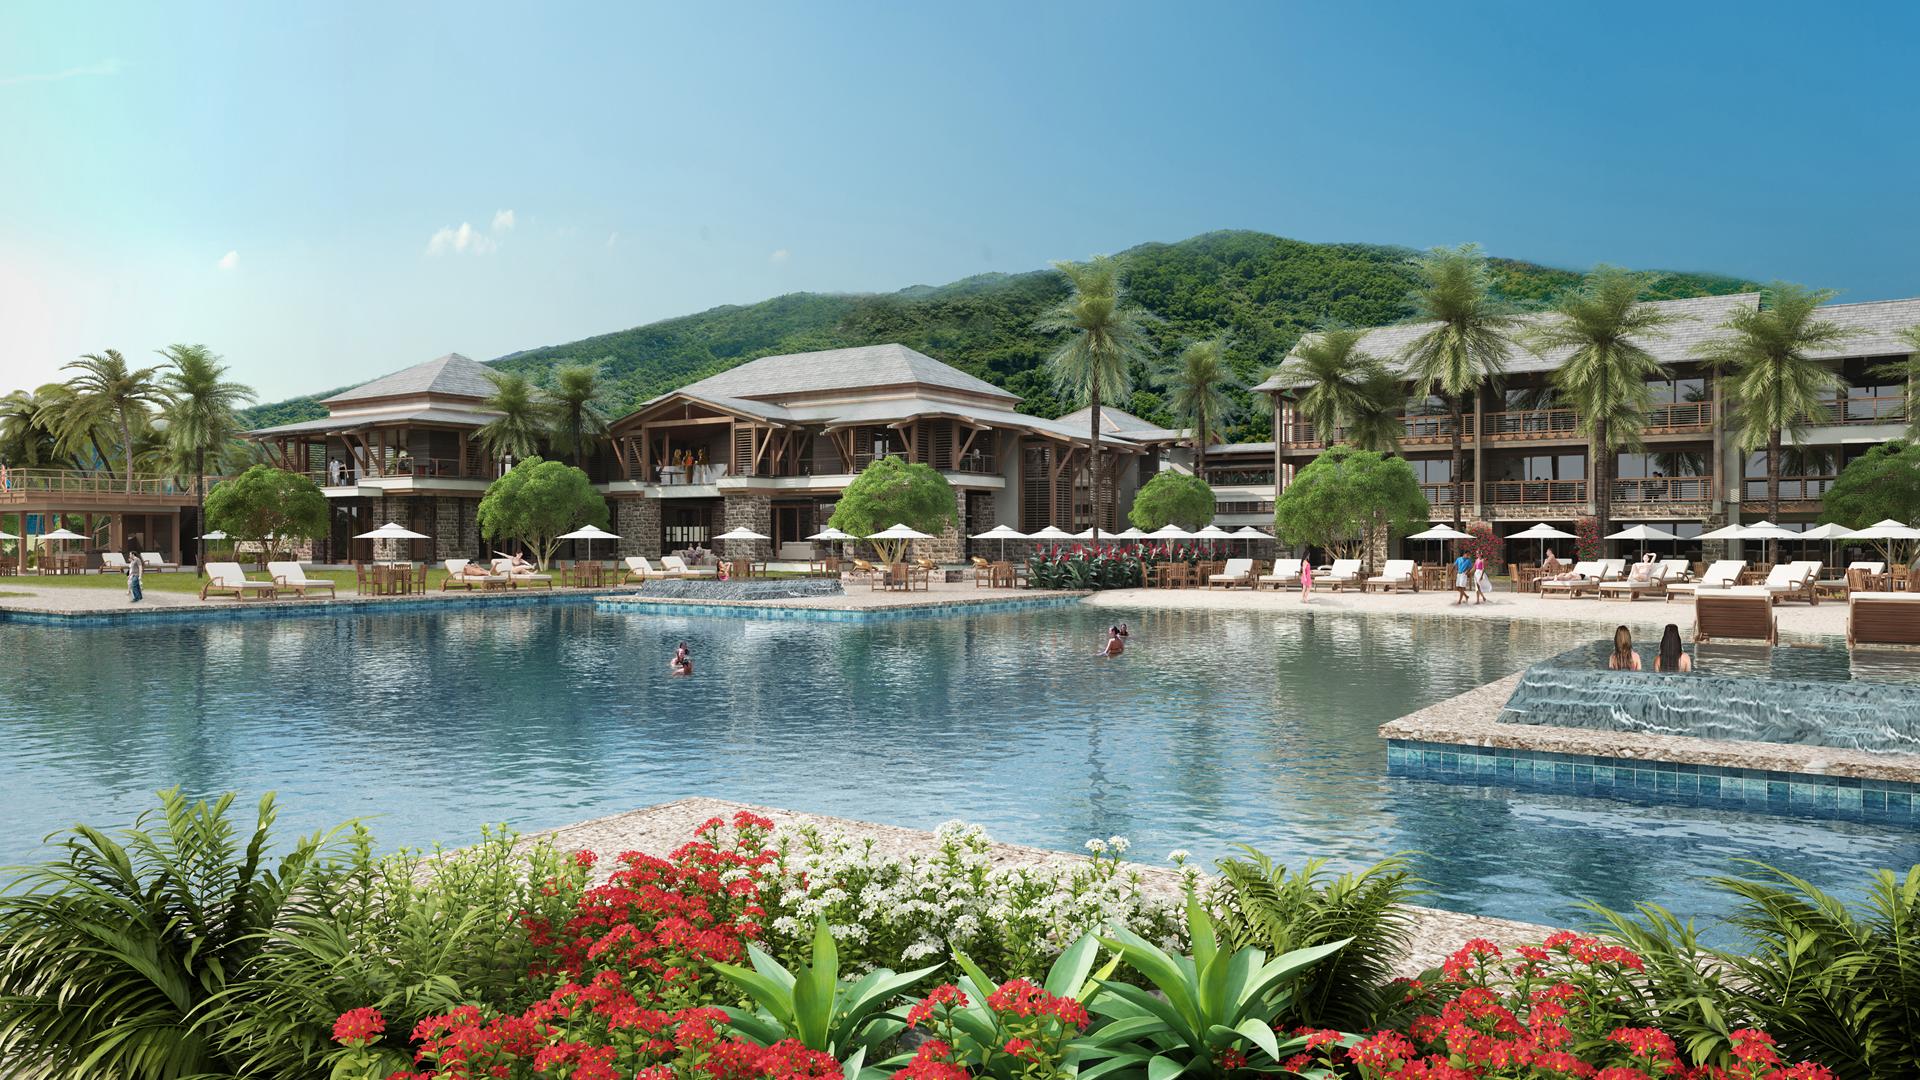 Kempinski abrirá un resort de lujo en Dominica en 2019